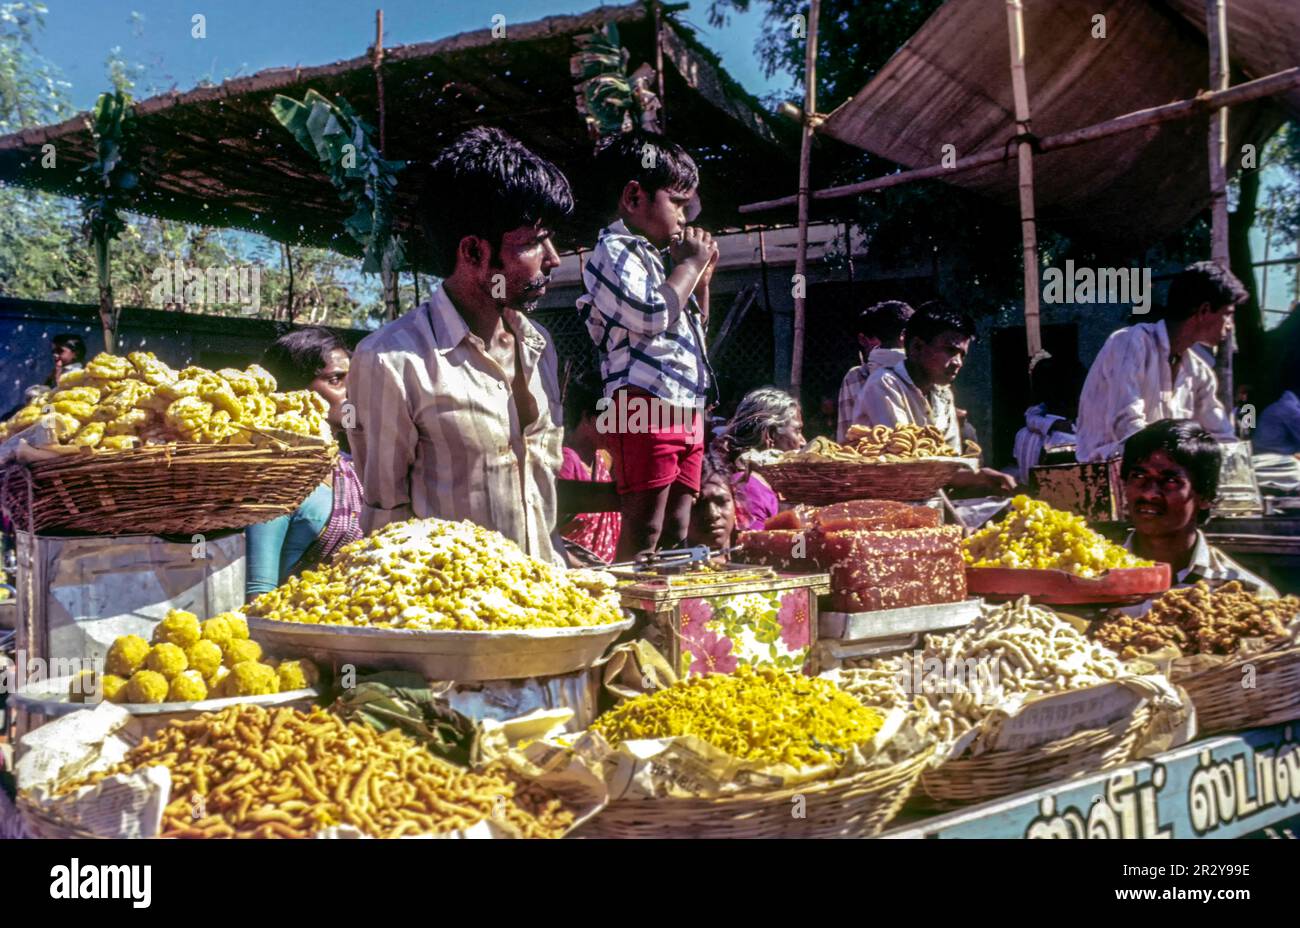 Boutique de bonbons et de serpents, marché périodique hebdomadaire à Thudiyalur, Coimbatore, Tamil Nadu, Inde du Sud, Inde, Asie Banque D'Images